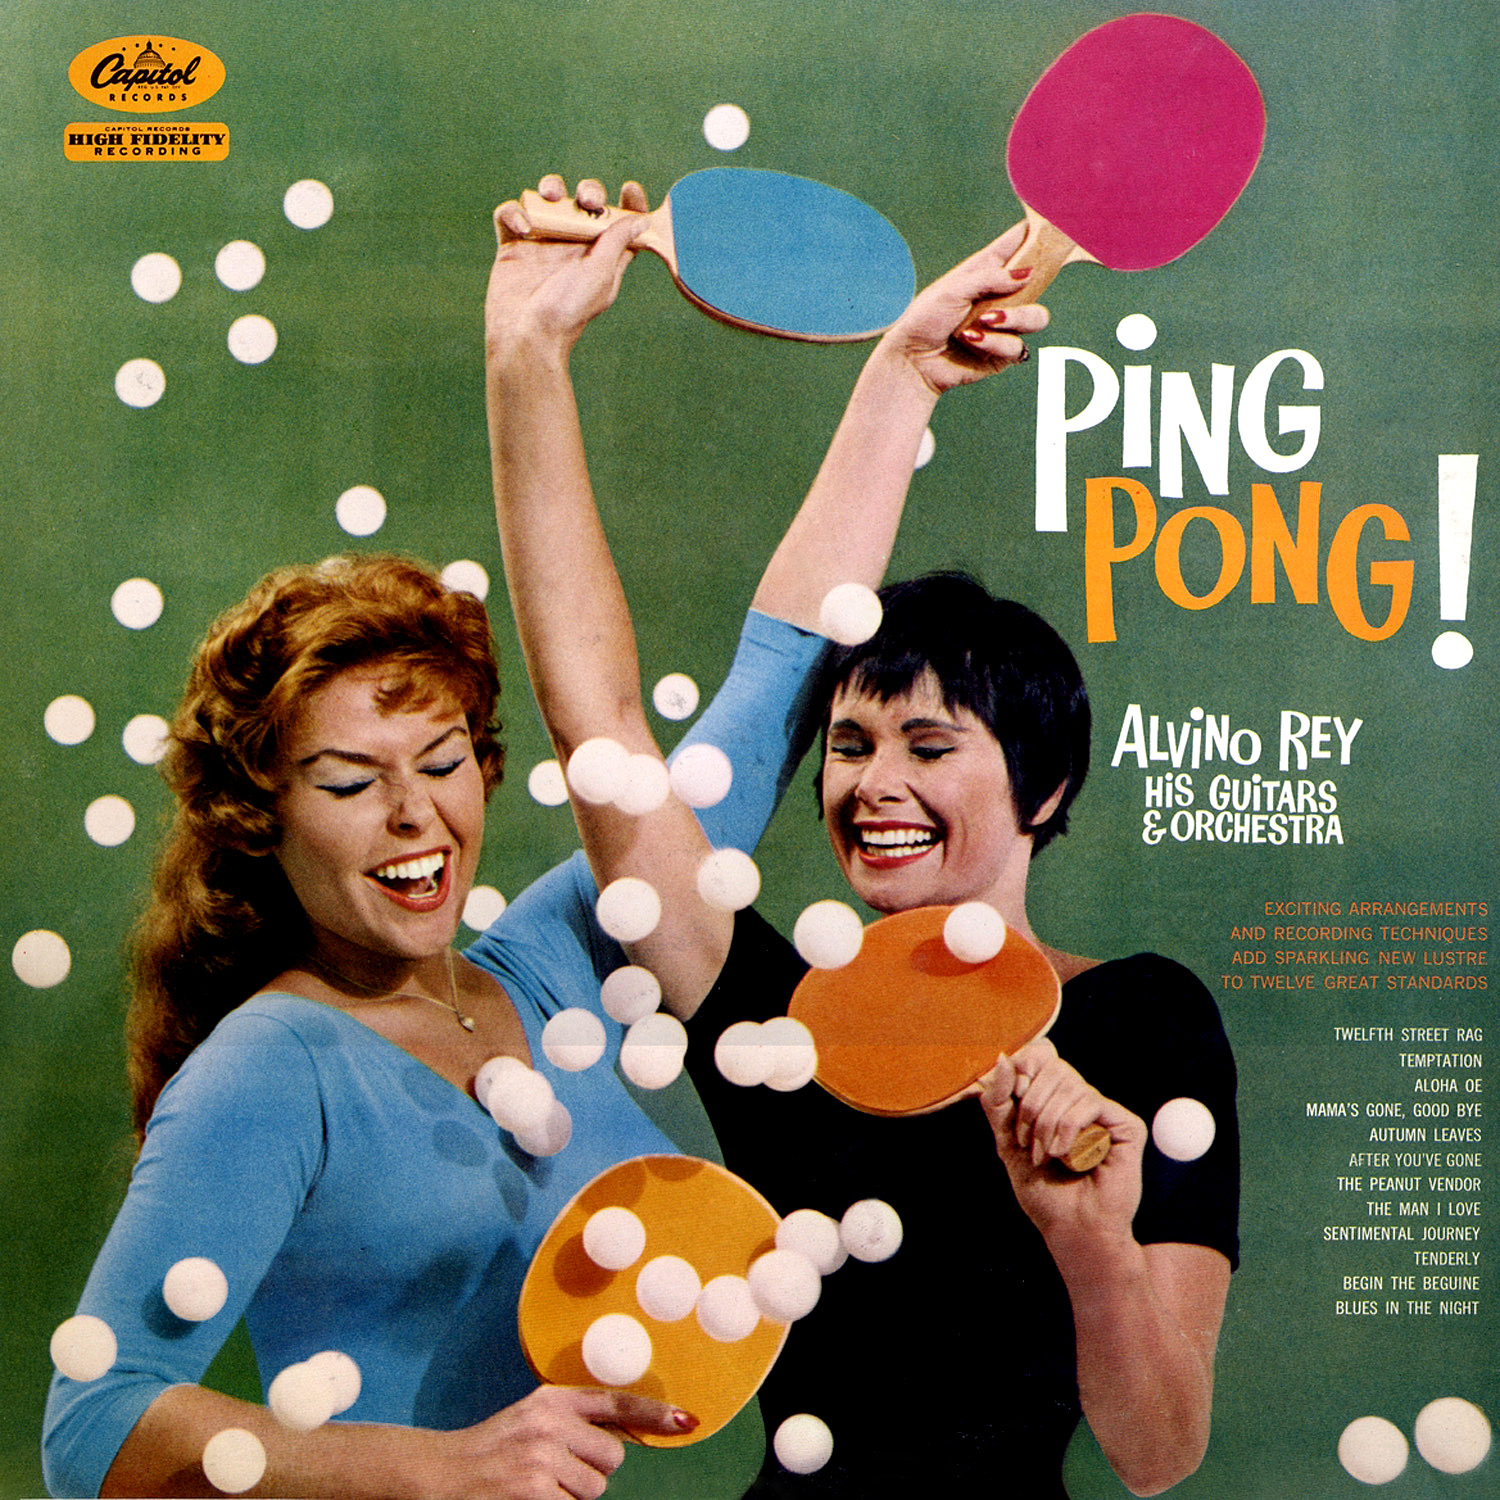 Alvino Rey 'Ping Pong' album cover